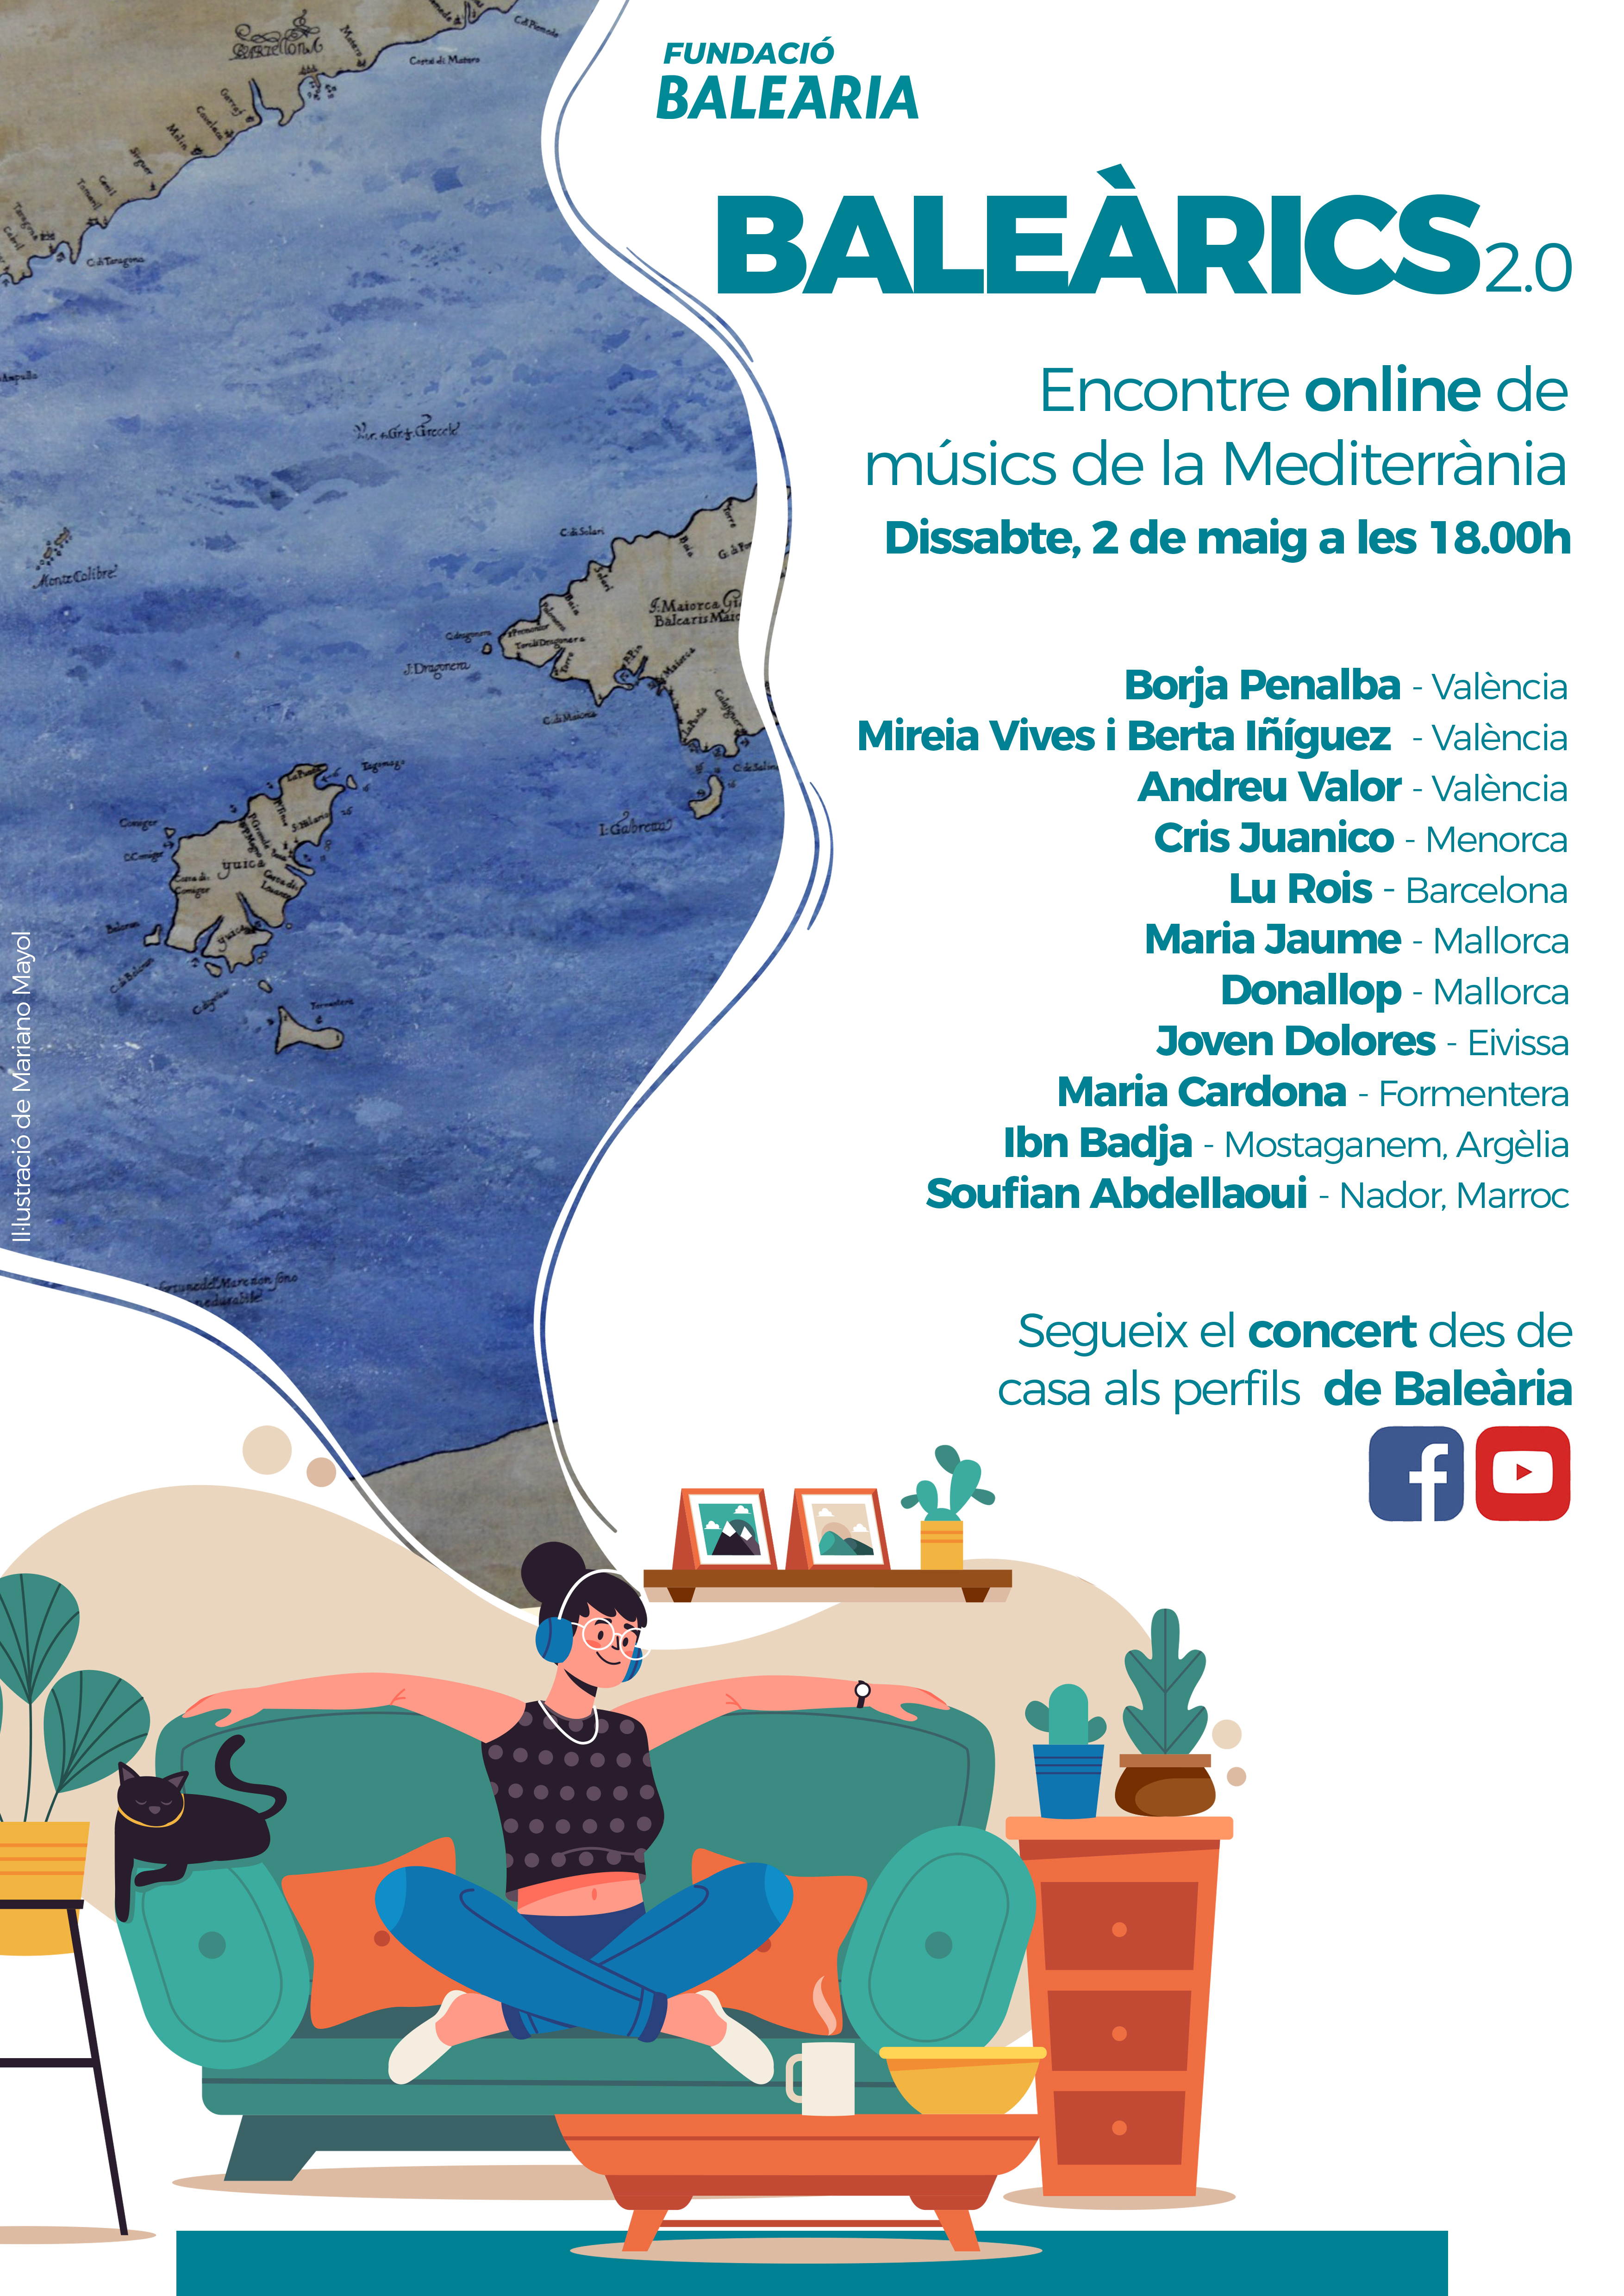 La Fundació Baleària organiza un festival de música ‘online’ el próximo sábado 2 de mayo